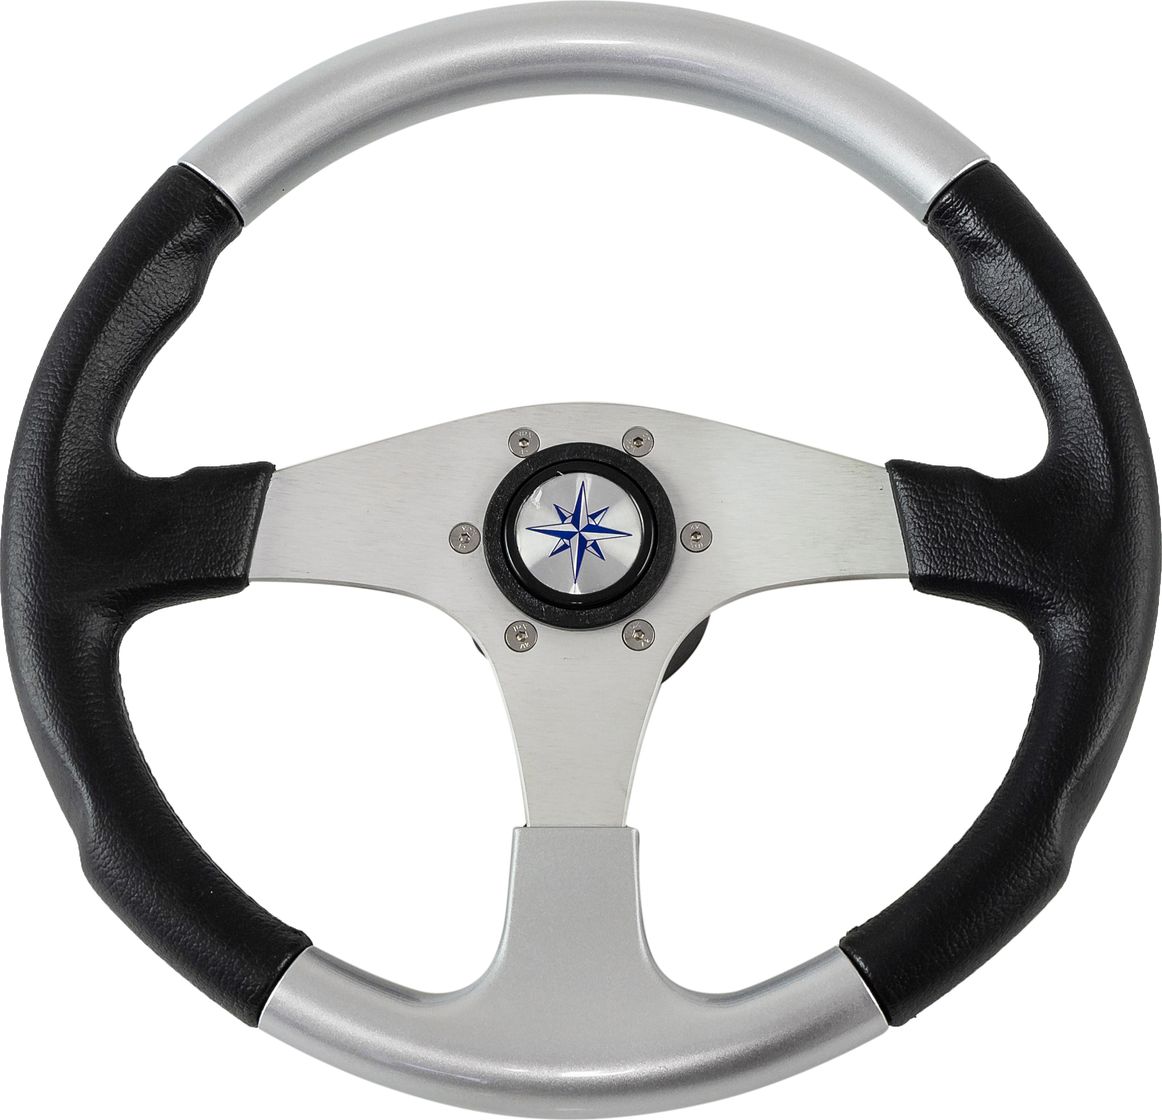 Рулевое колесо EVO MARINE 2 обод черносеребряный, спицы серебряные д. 355 мм VN850001-93 рулевое колесо leader tanegum обод серебряные спицы д 360 мм vn7360 01